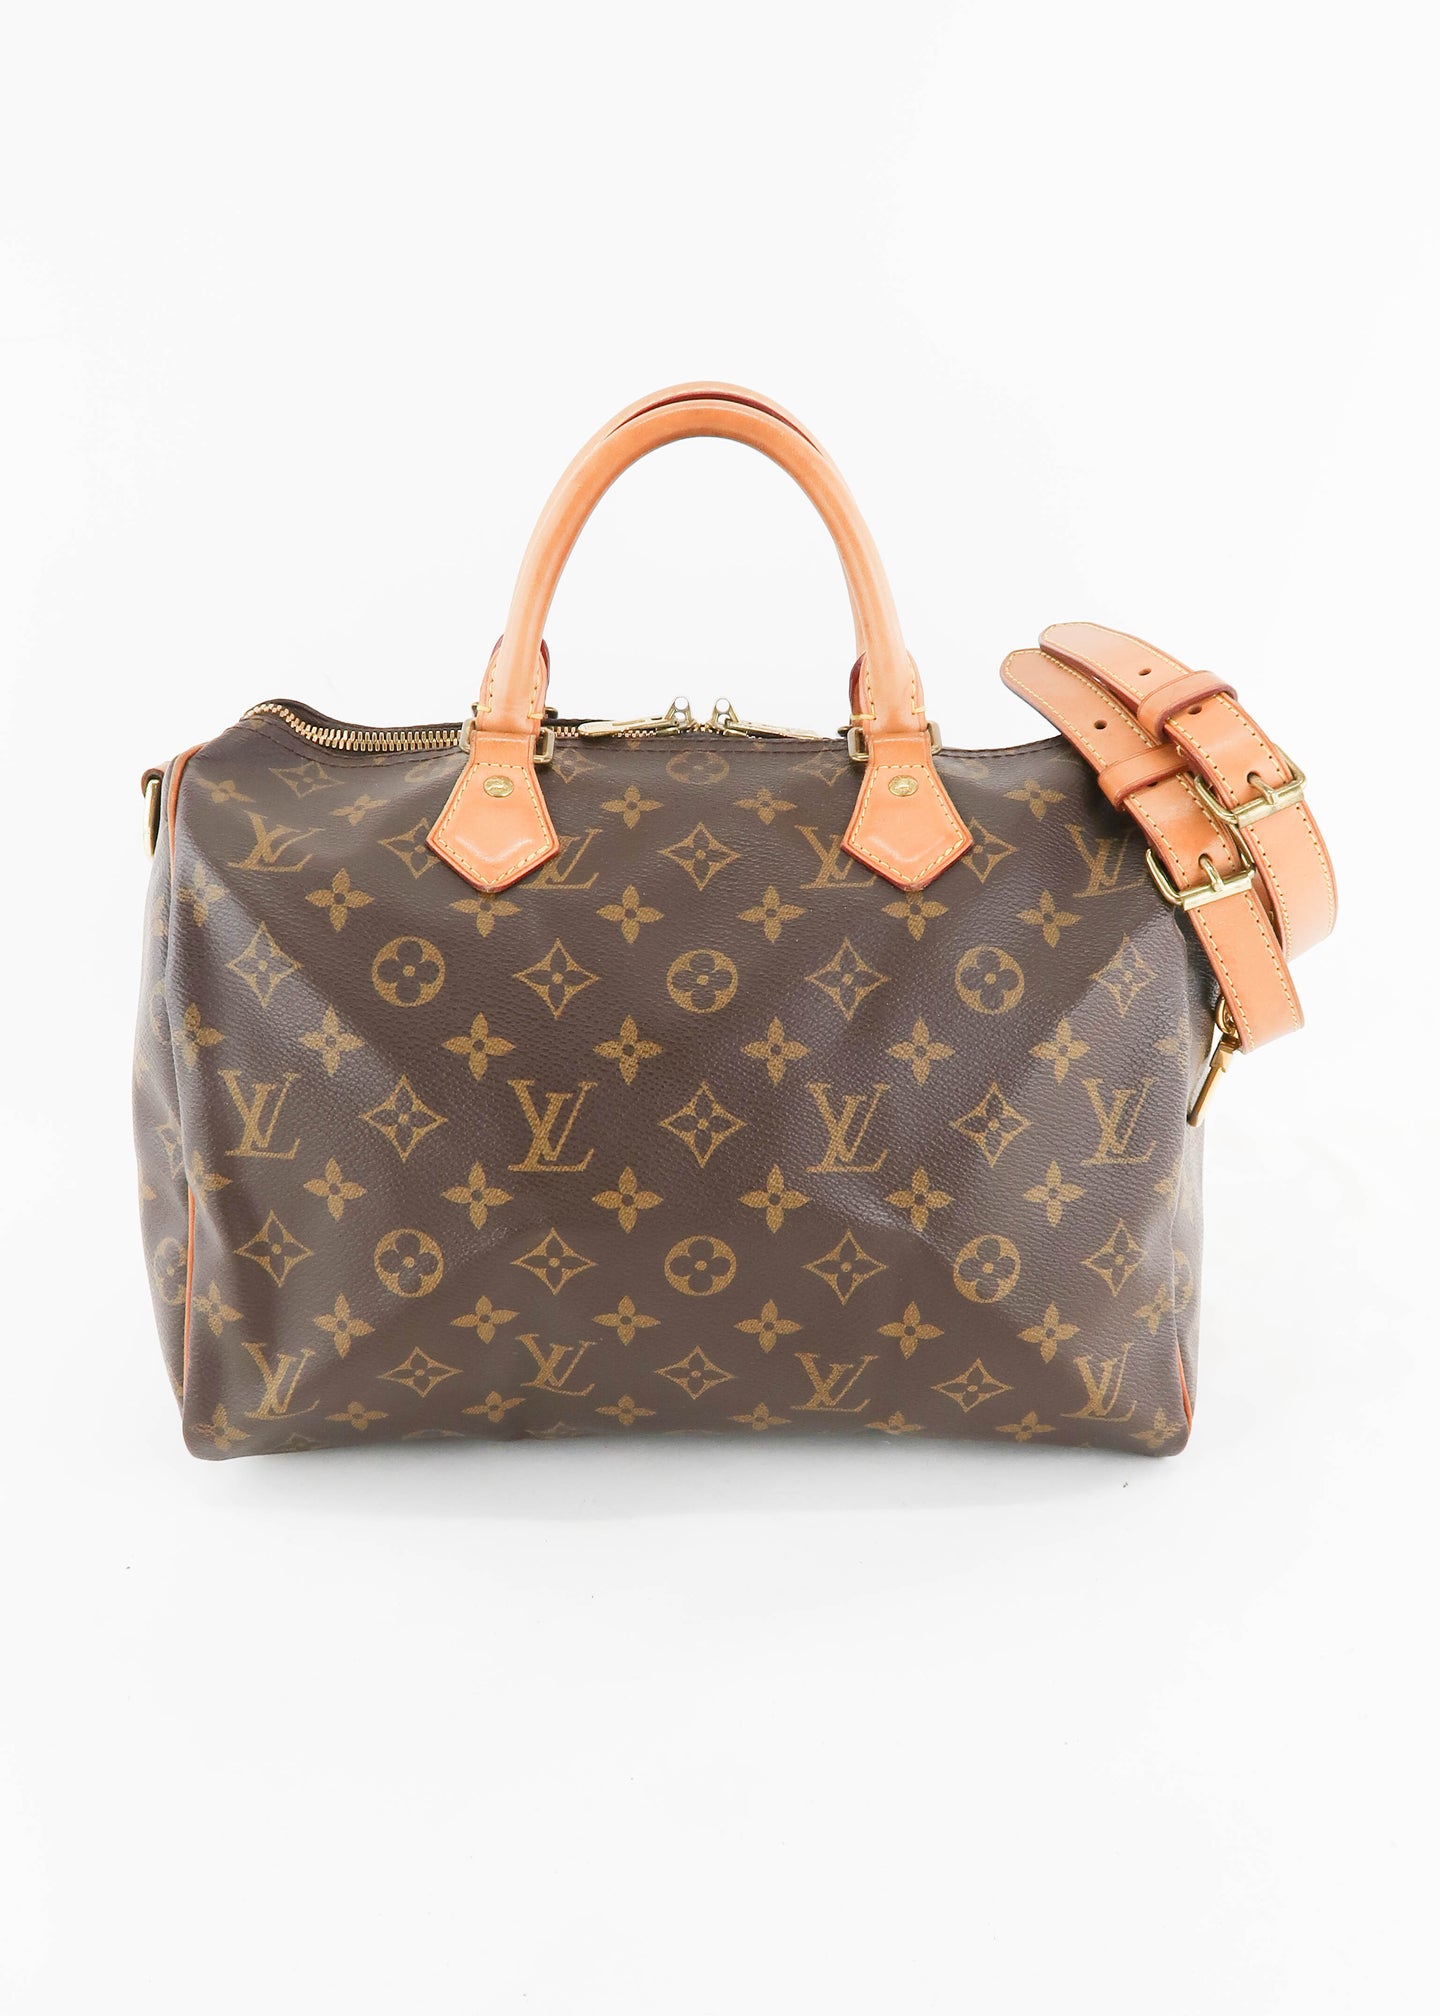 100% Authentic Louis Vuitton's Speedy 30 Dust Bag